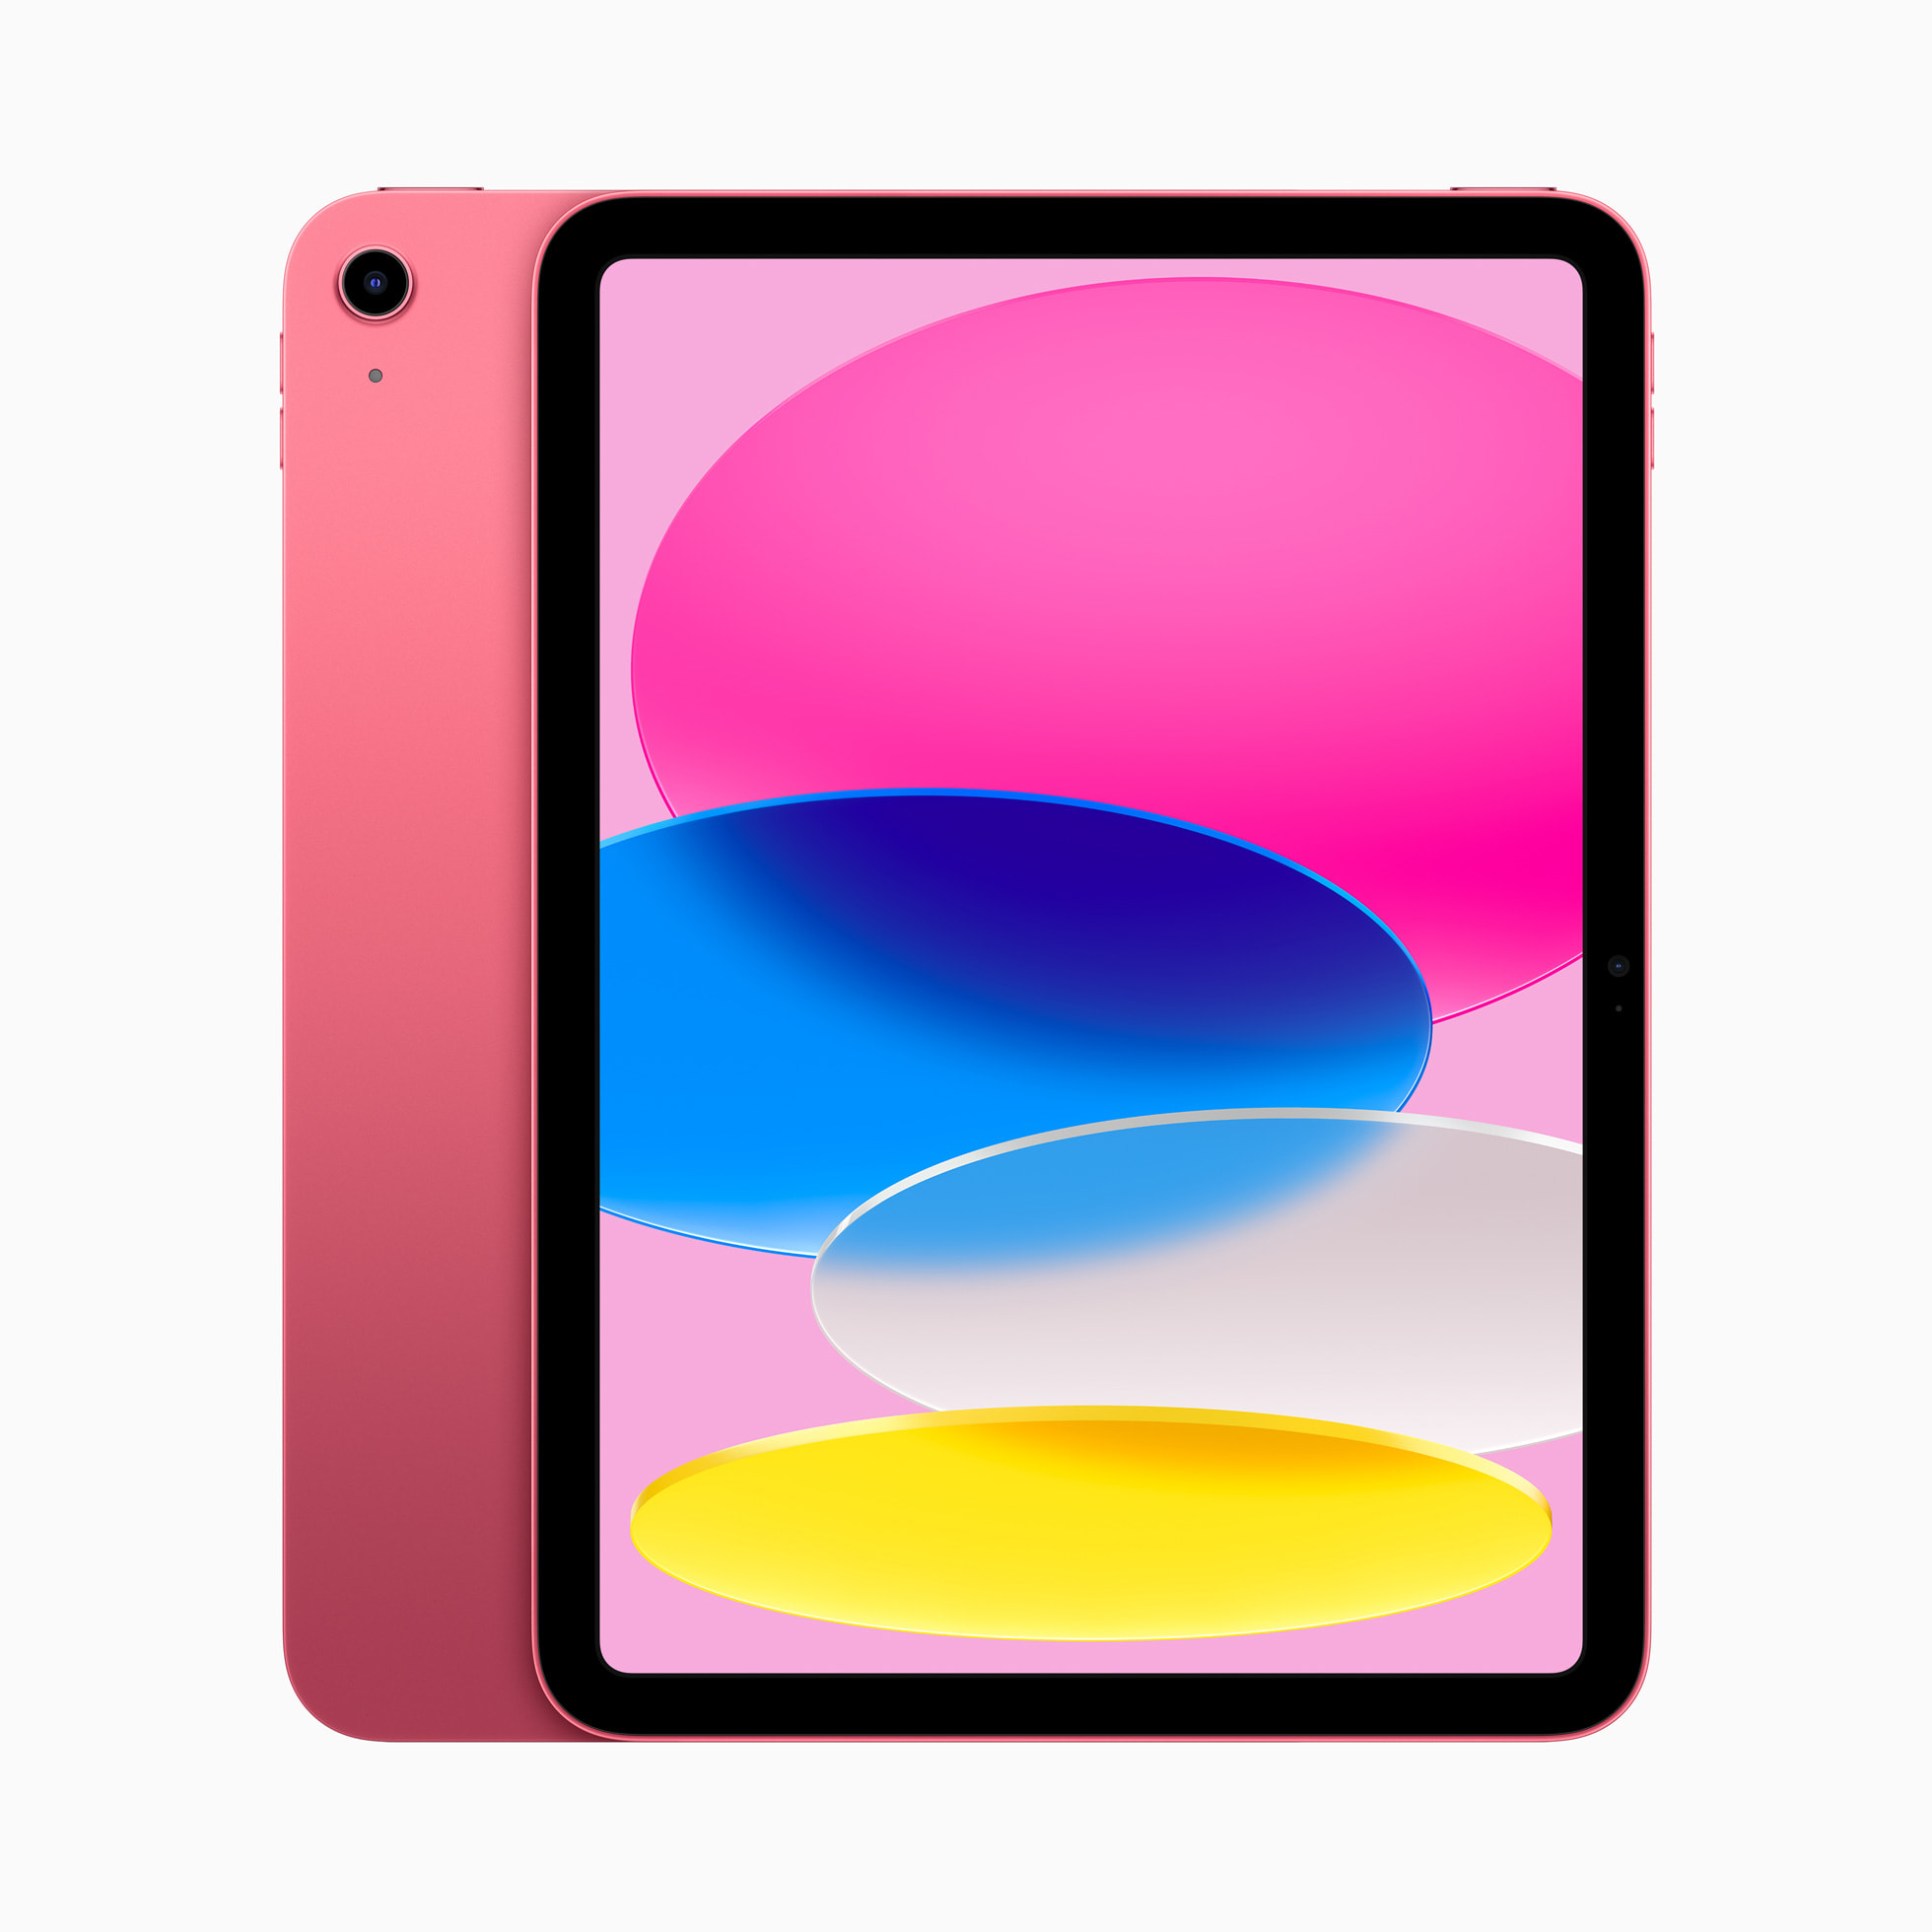 Apple ra mắt iPad giá rẻ mới: Nhiều nâng cấp nhưng giá không còn rẻ như trước - Ảnh 1.